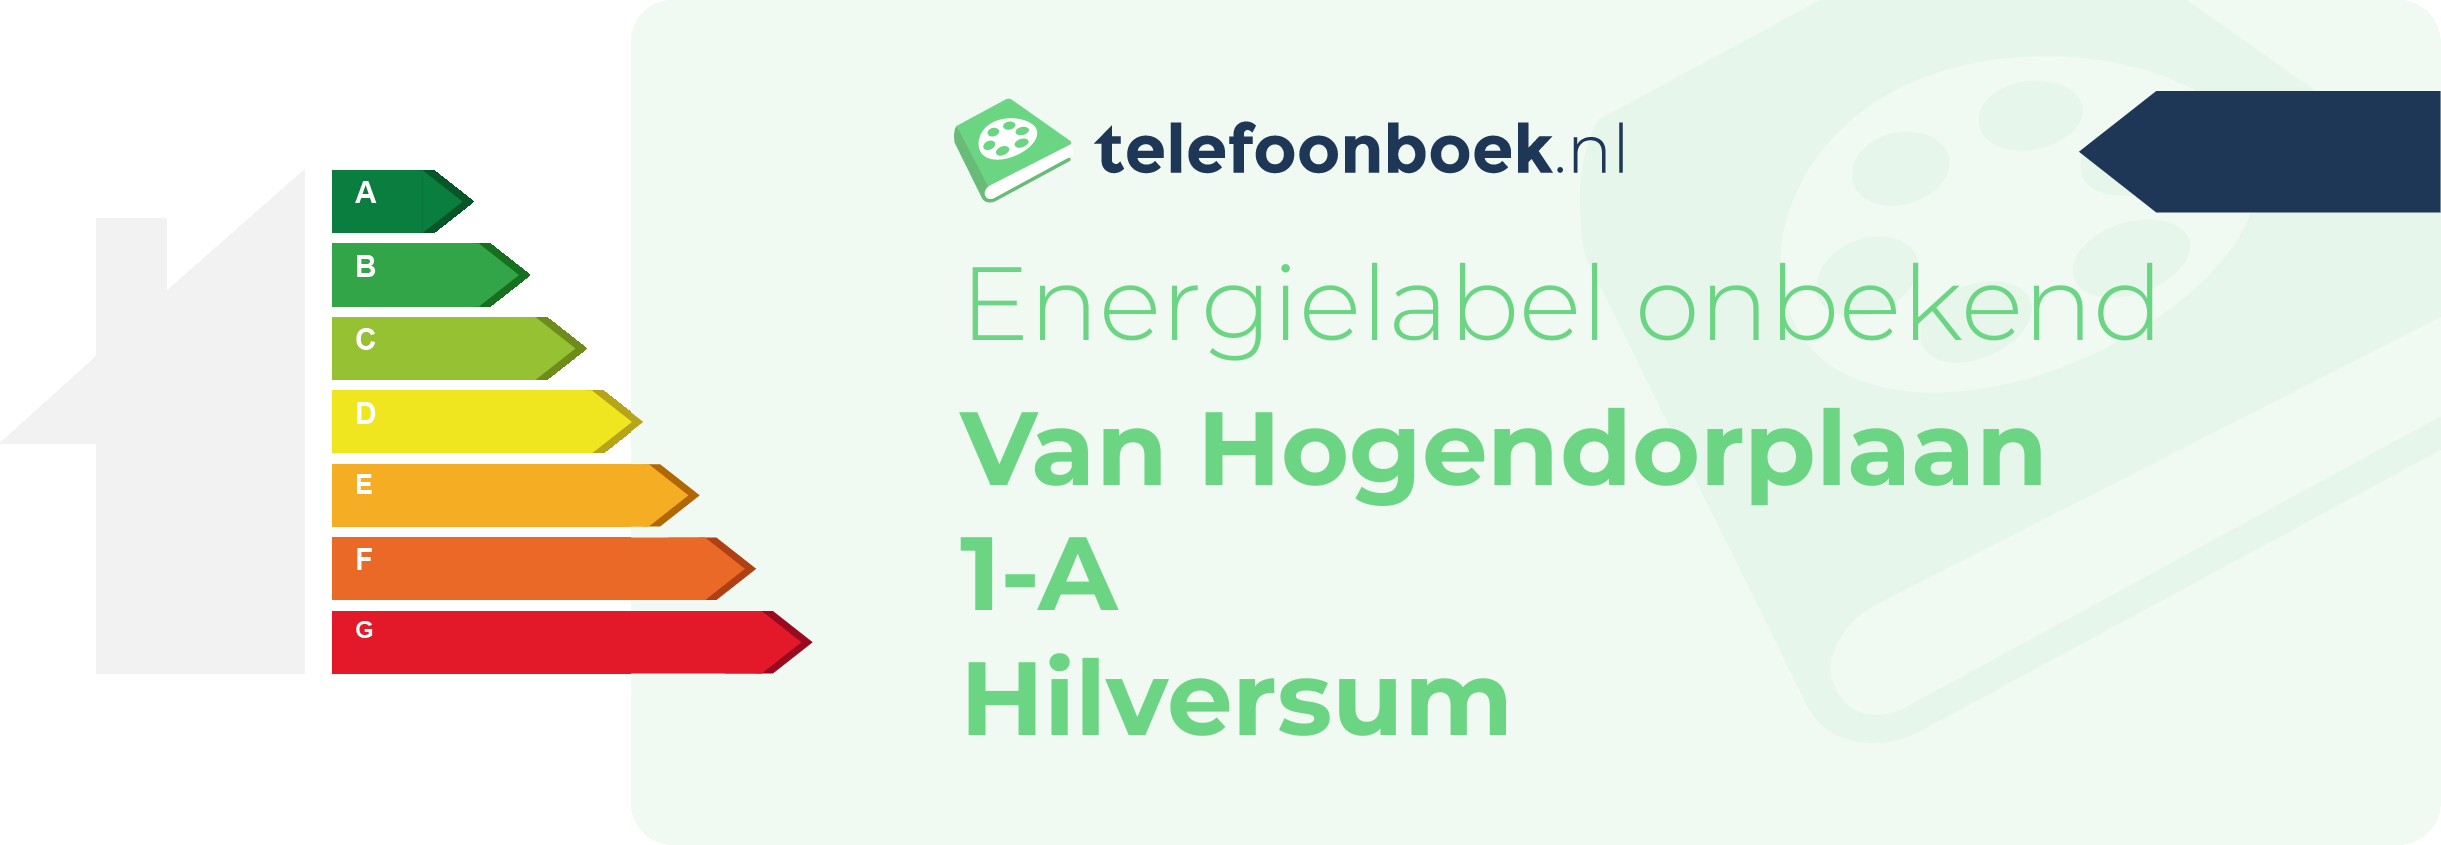 Energielabel Van Hogendorplaan 1-A Hilversum